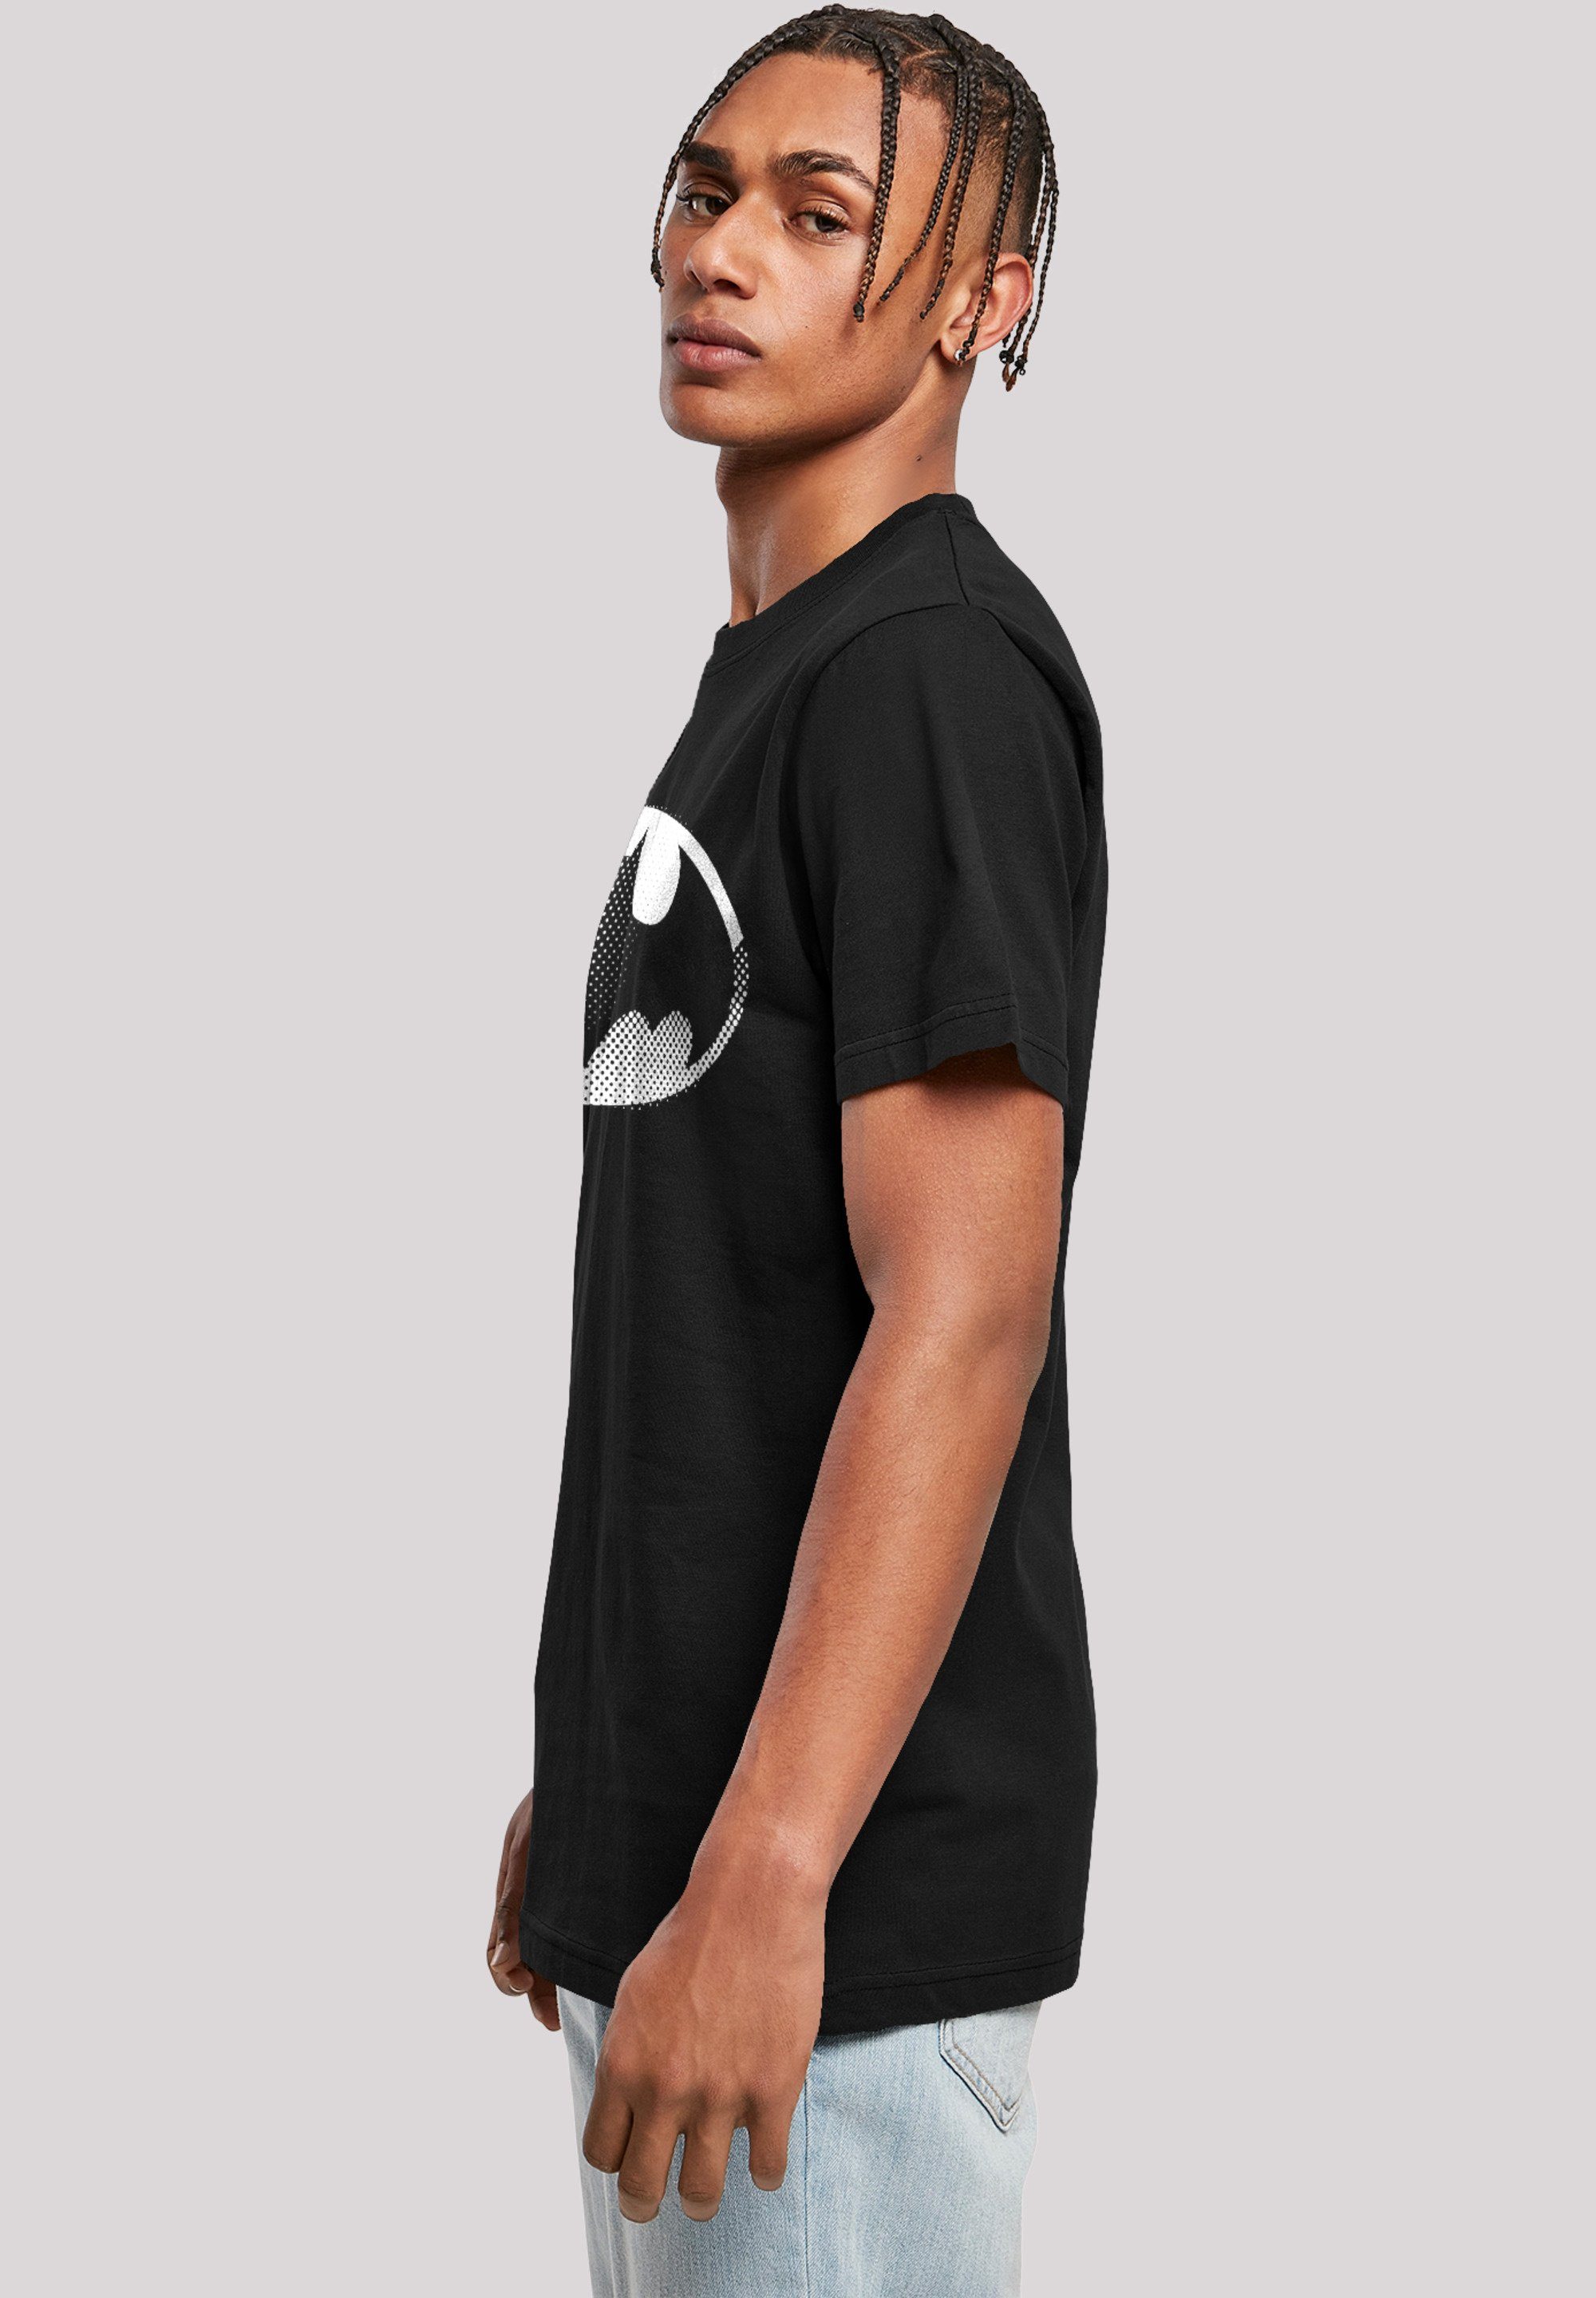 Logo F4NT4STIC Spot Merch,Regular-Fit,Basic,Bedruckt T-Shirt Batman Herren,Premium DC Comics